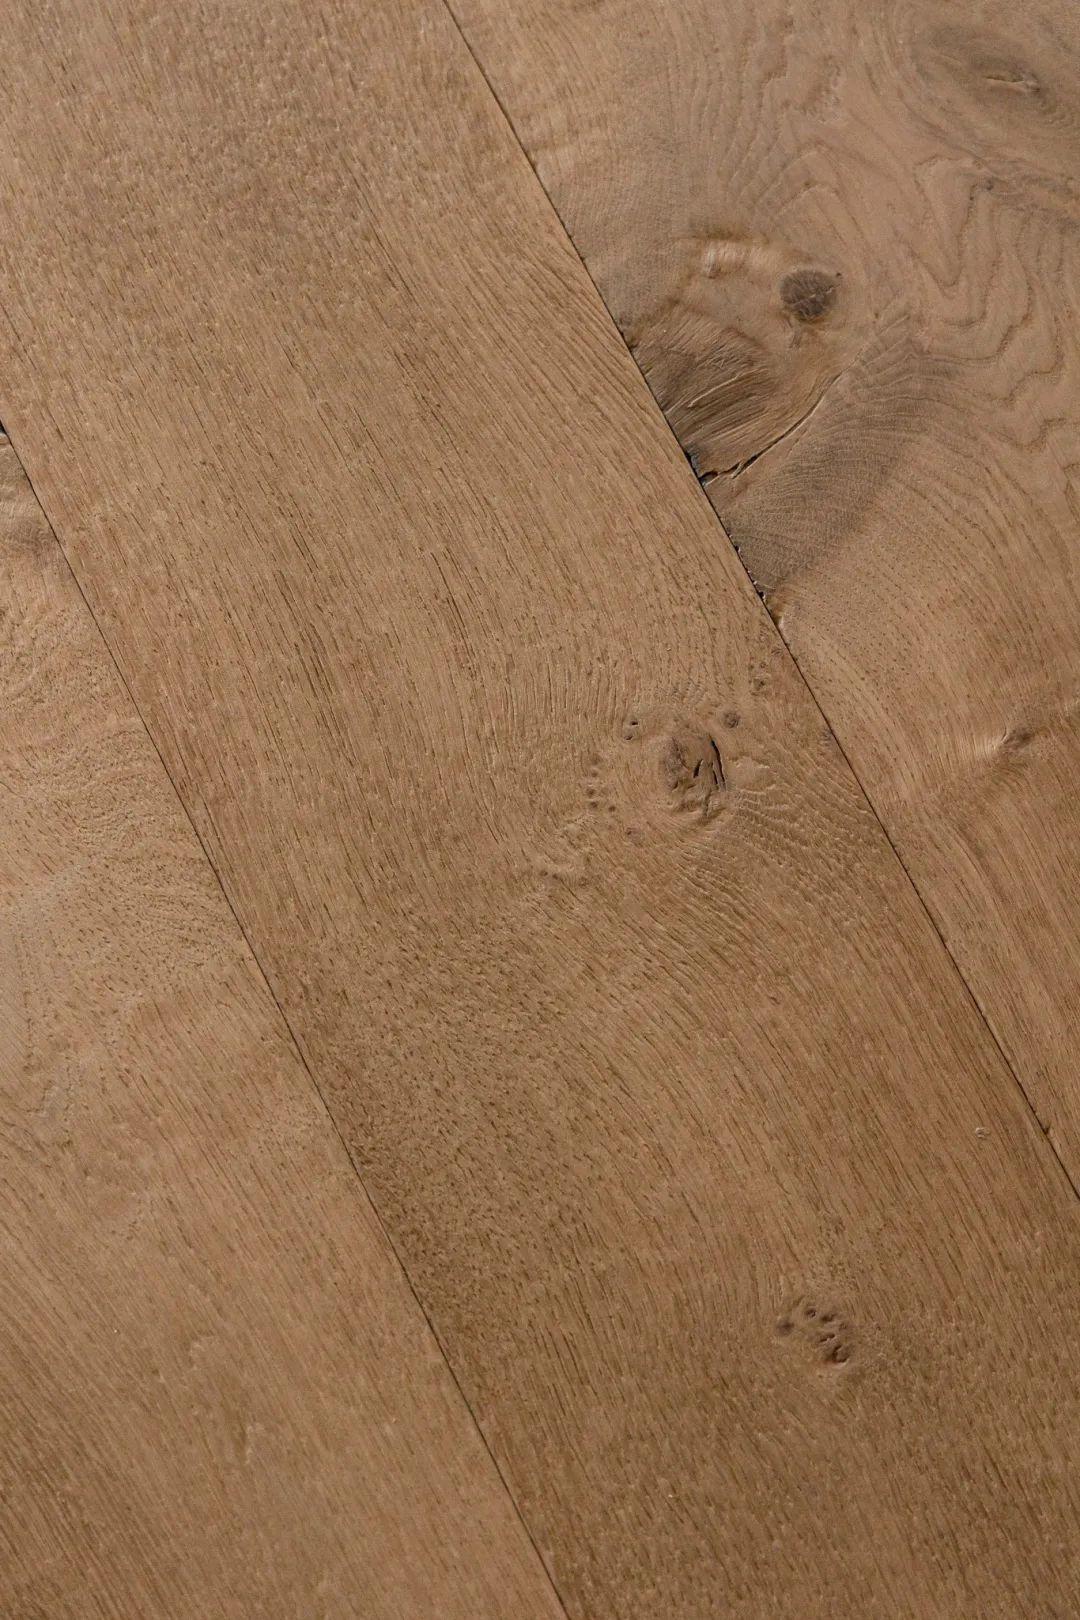 将木材本身的肌理自然呈现,同时以全新的拉丝工艺将水性漆面渗透木纹